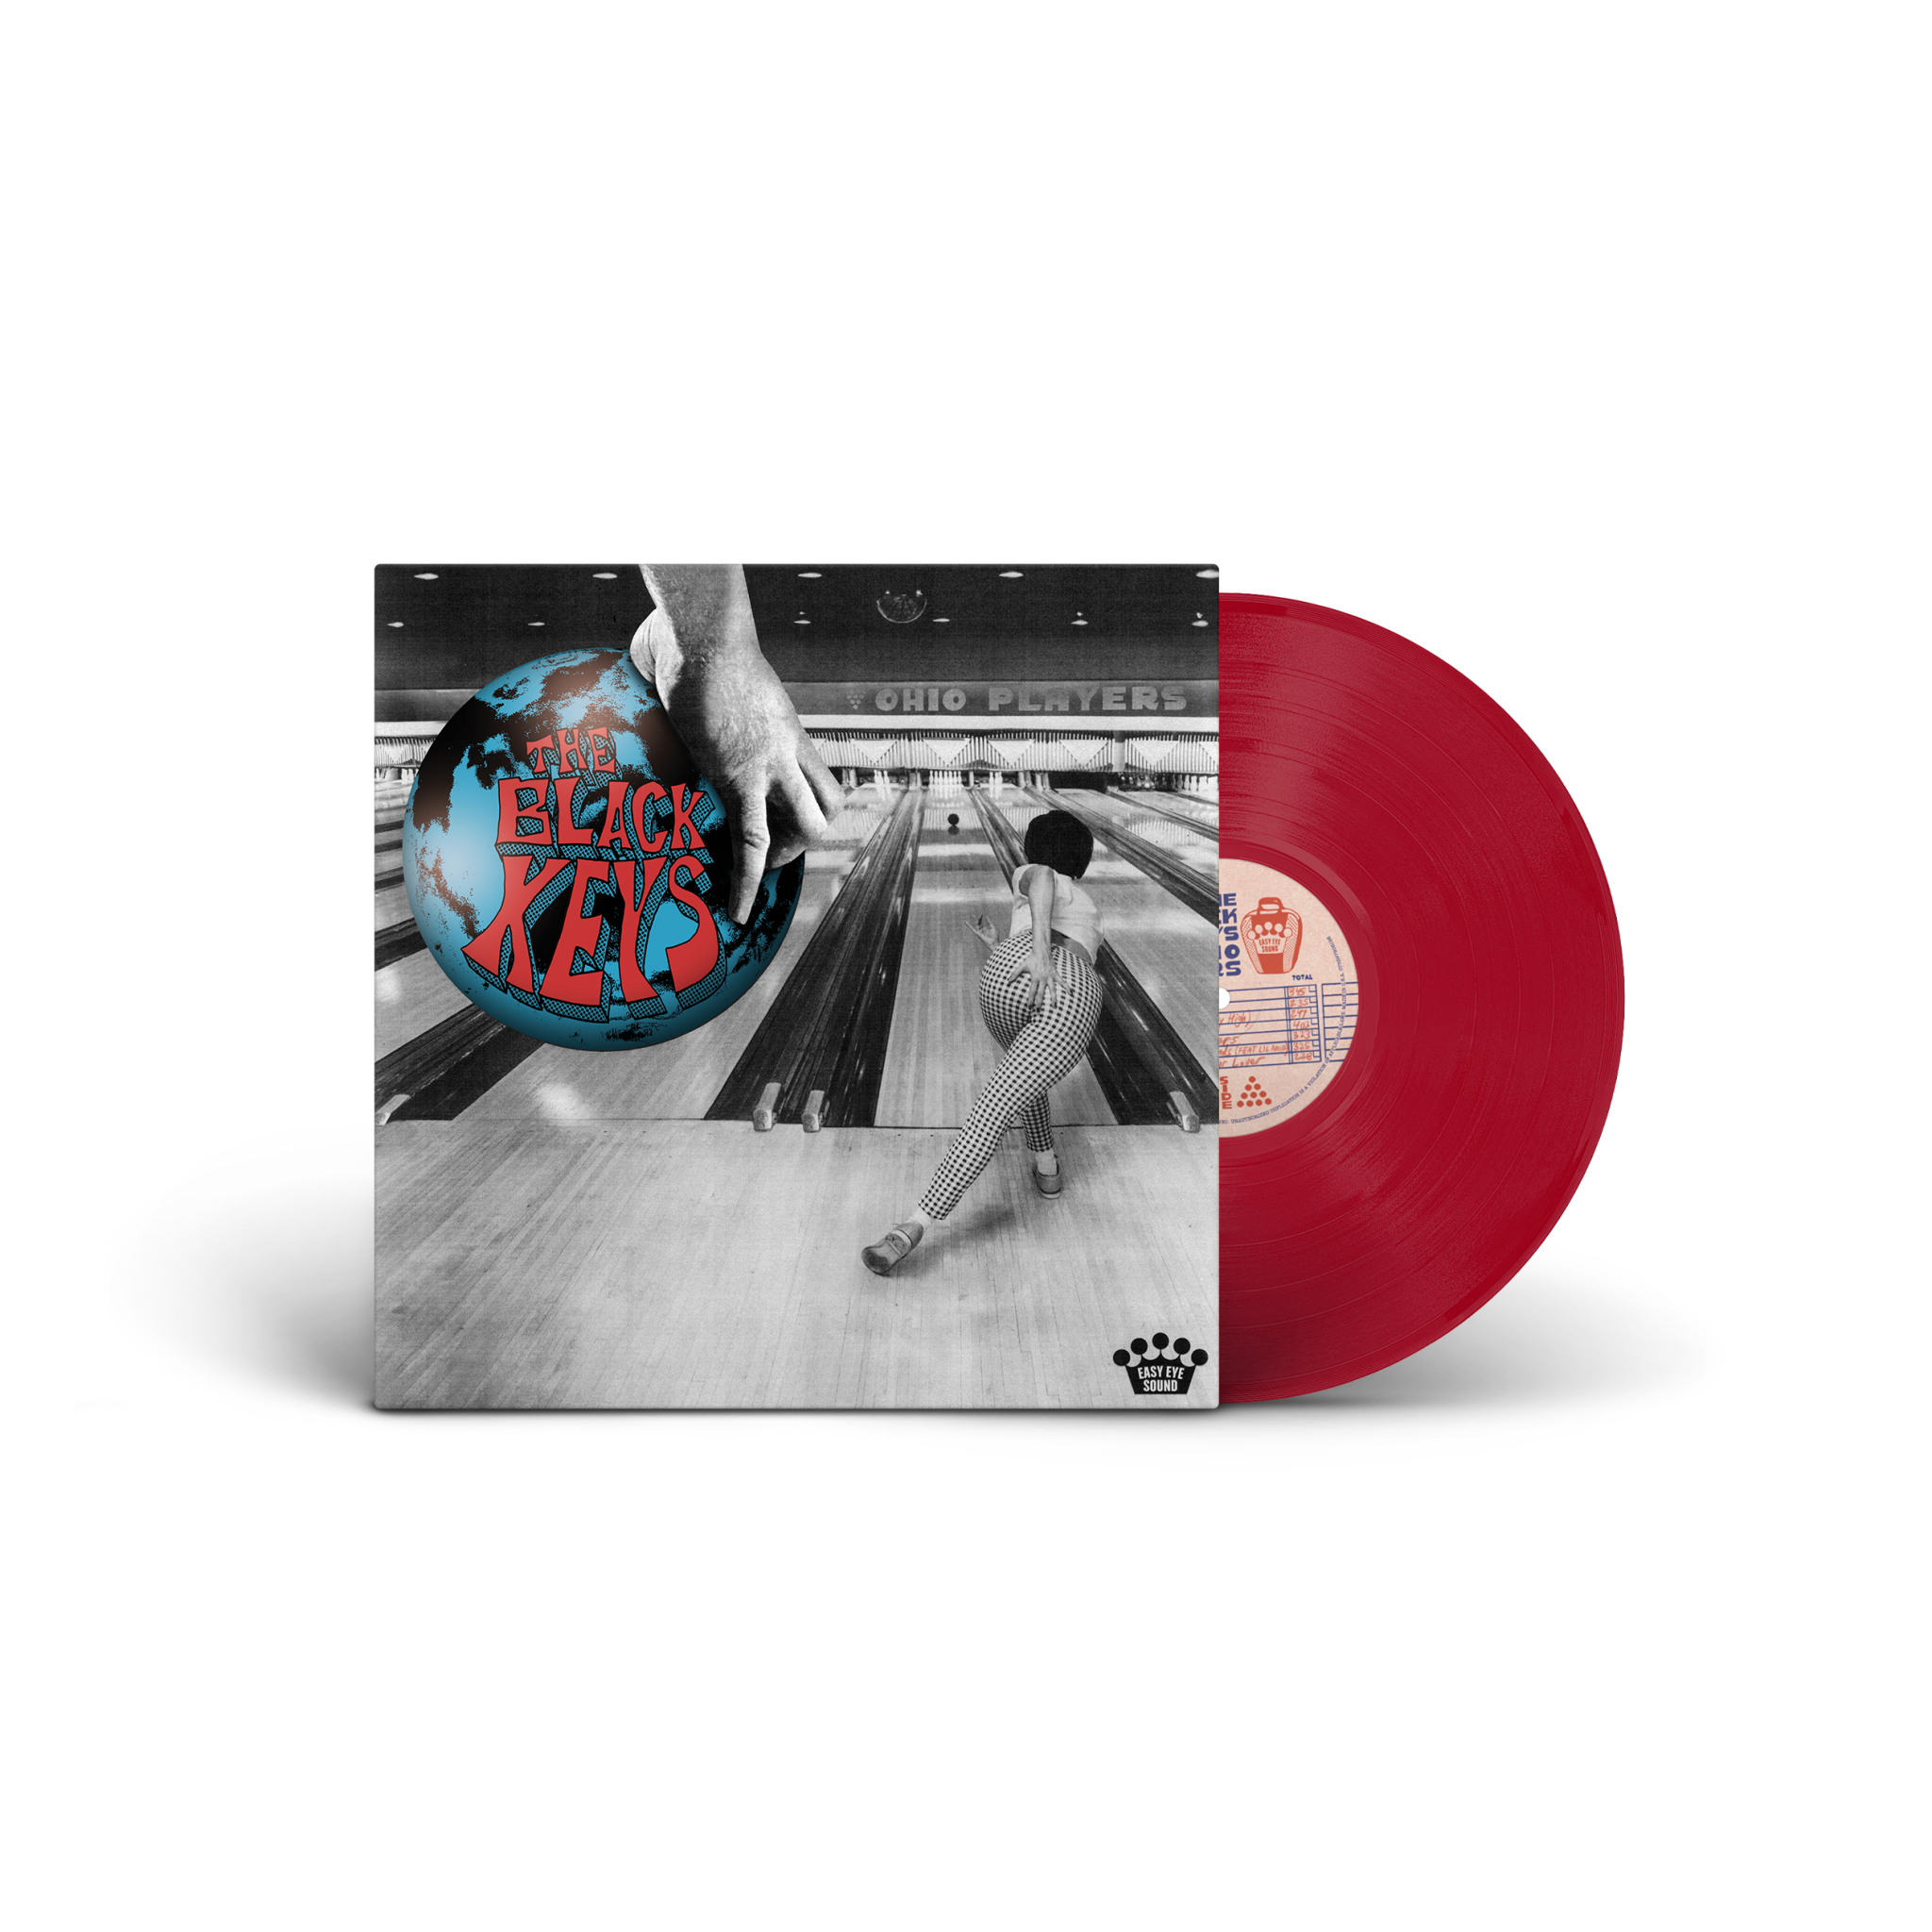 Black Keys- Ohio Players (Indie Exclusive Apple Red Vinyl)